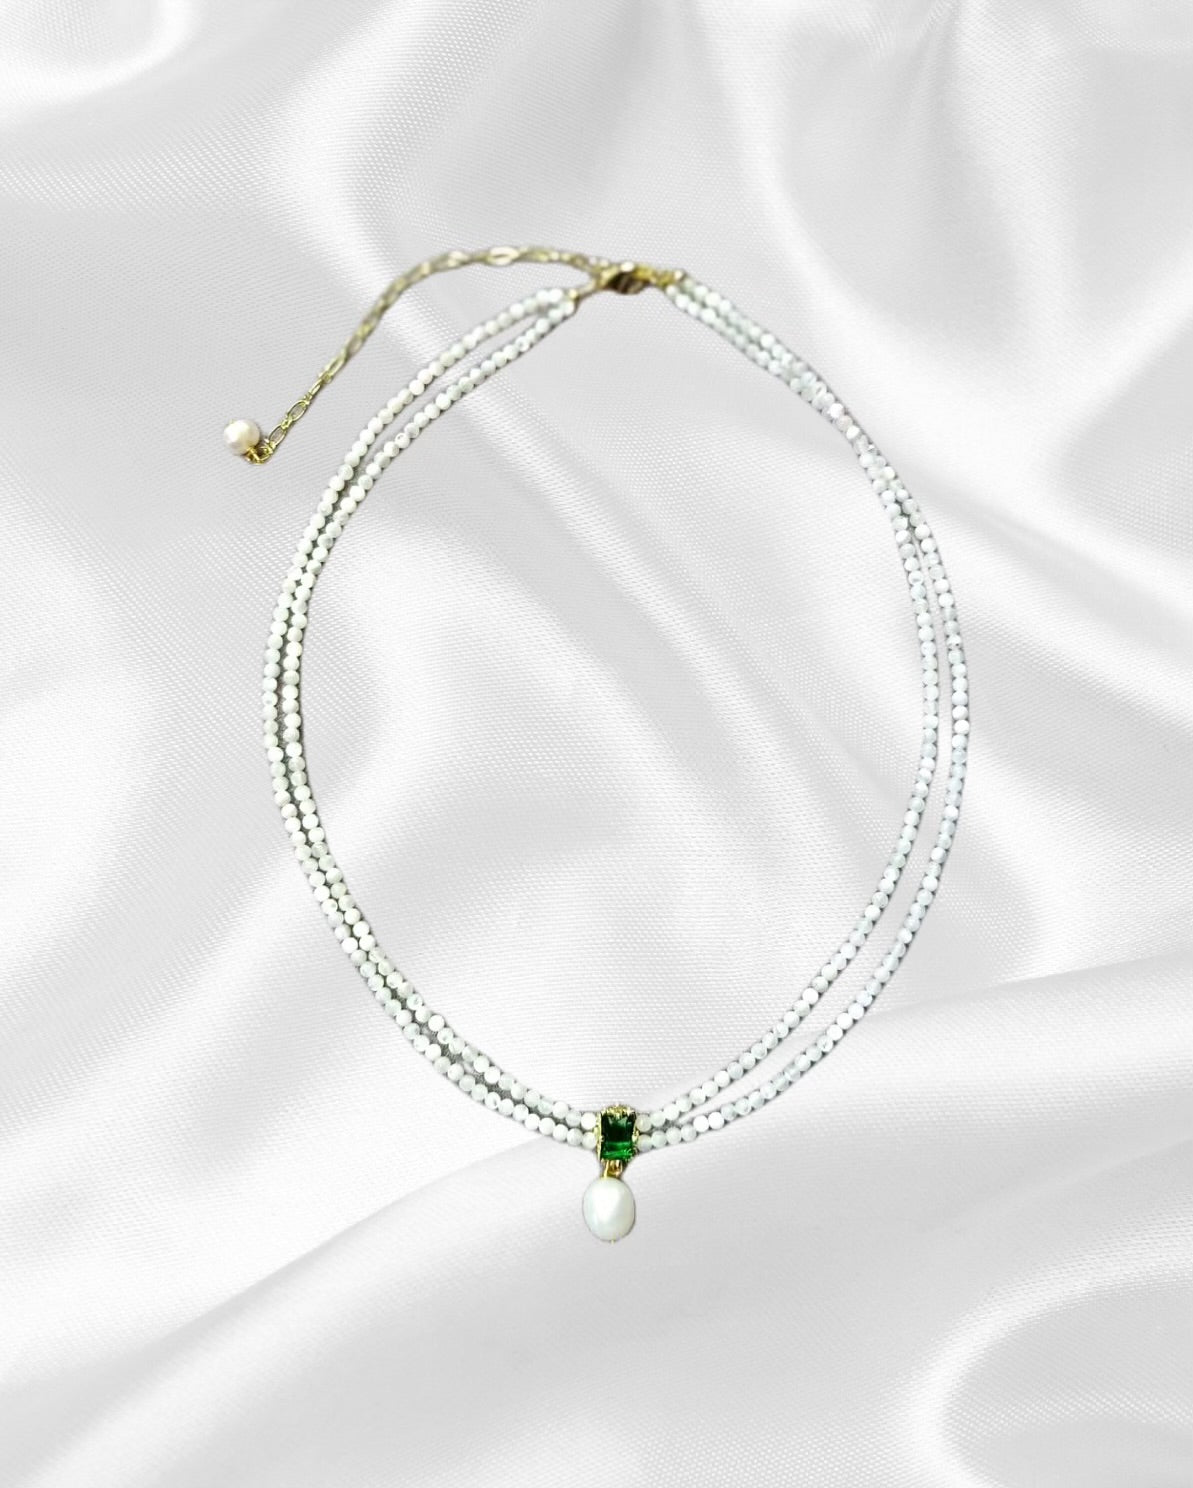 Halskette "靓 Liang" - Linglong Kollektion